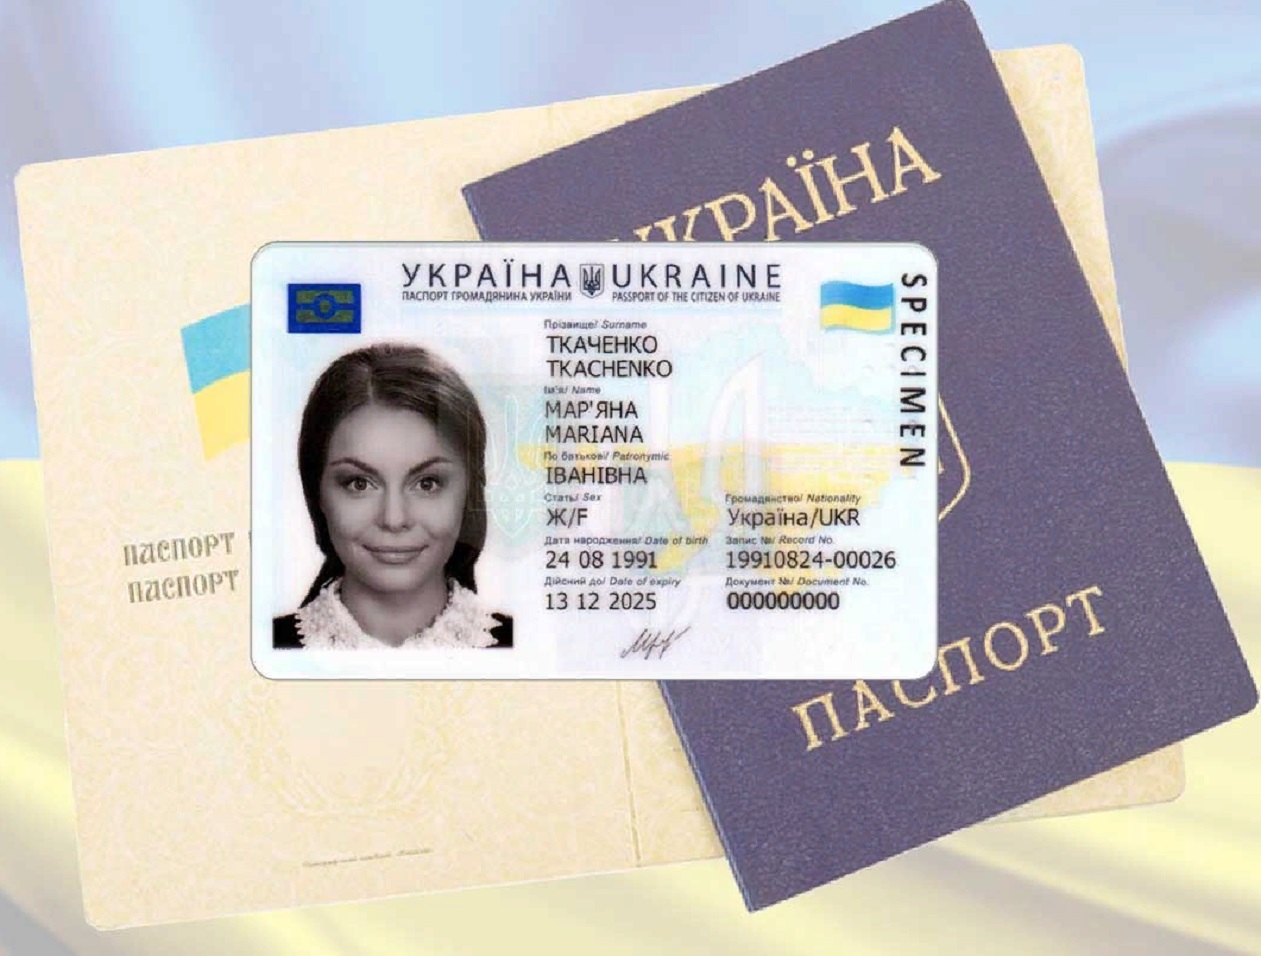 Украинцам показали три документа, которые больше не действительны